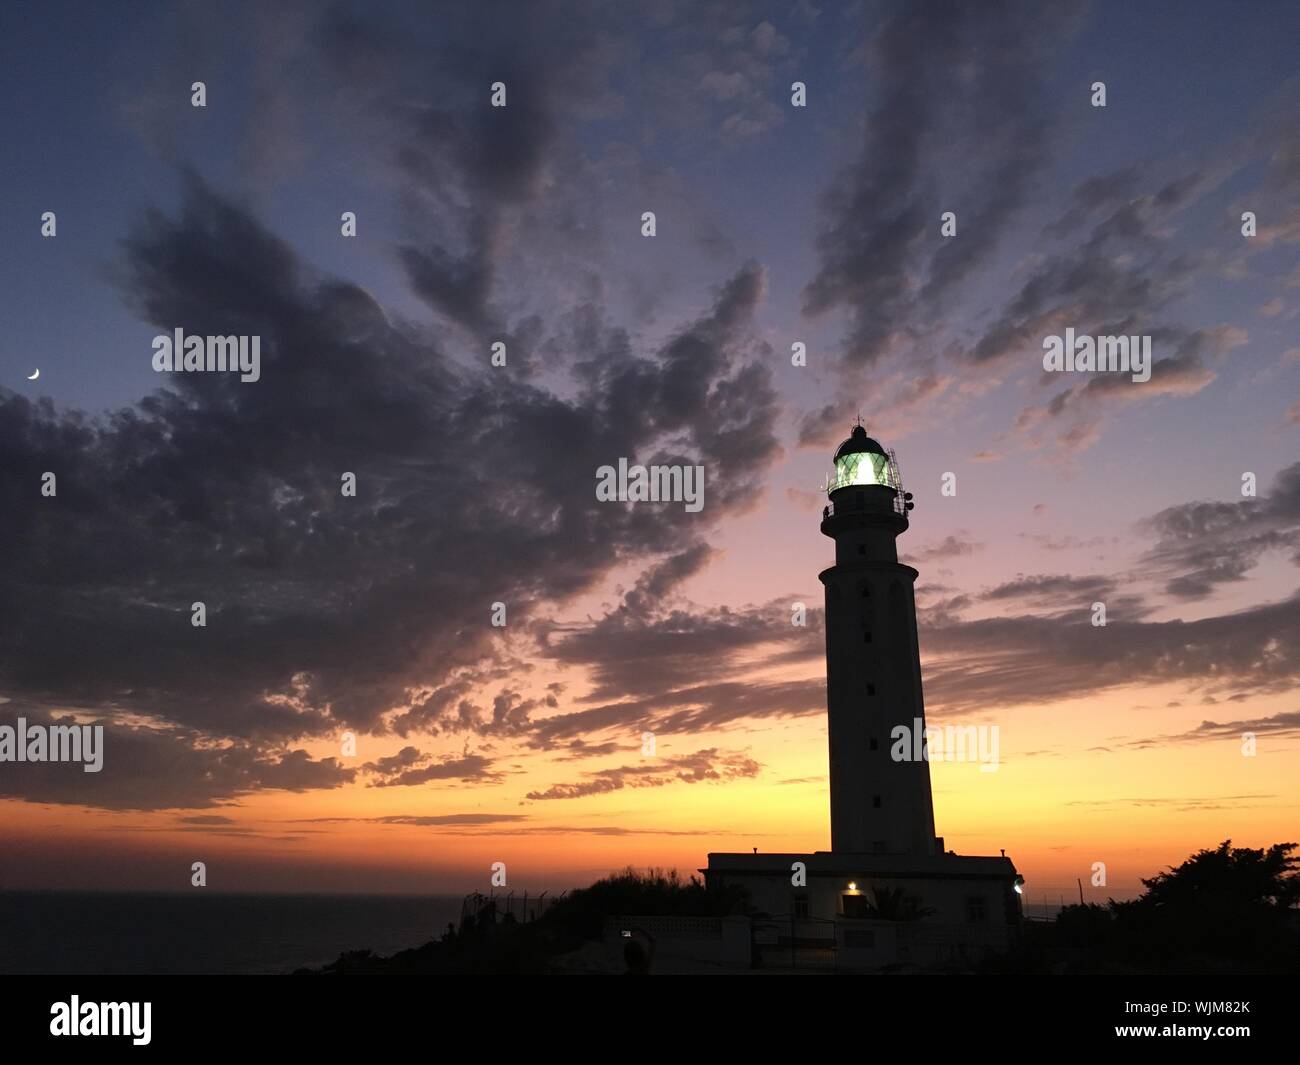 Trafalgar lighthouse on the coast of Cadiz at sunset Stock Photo